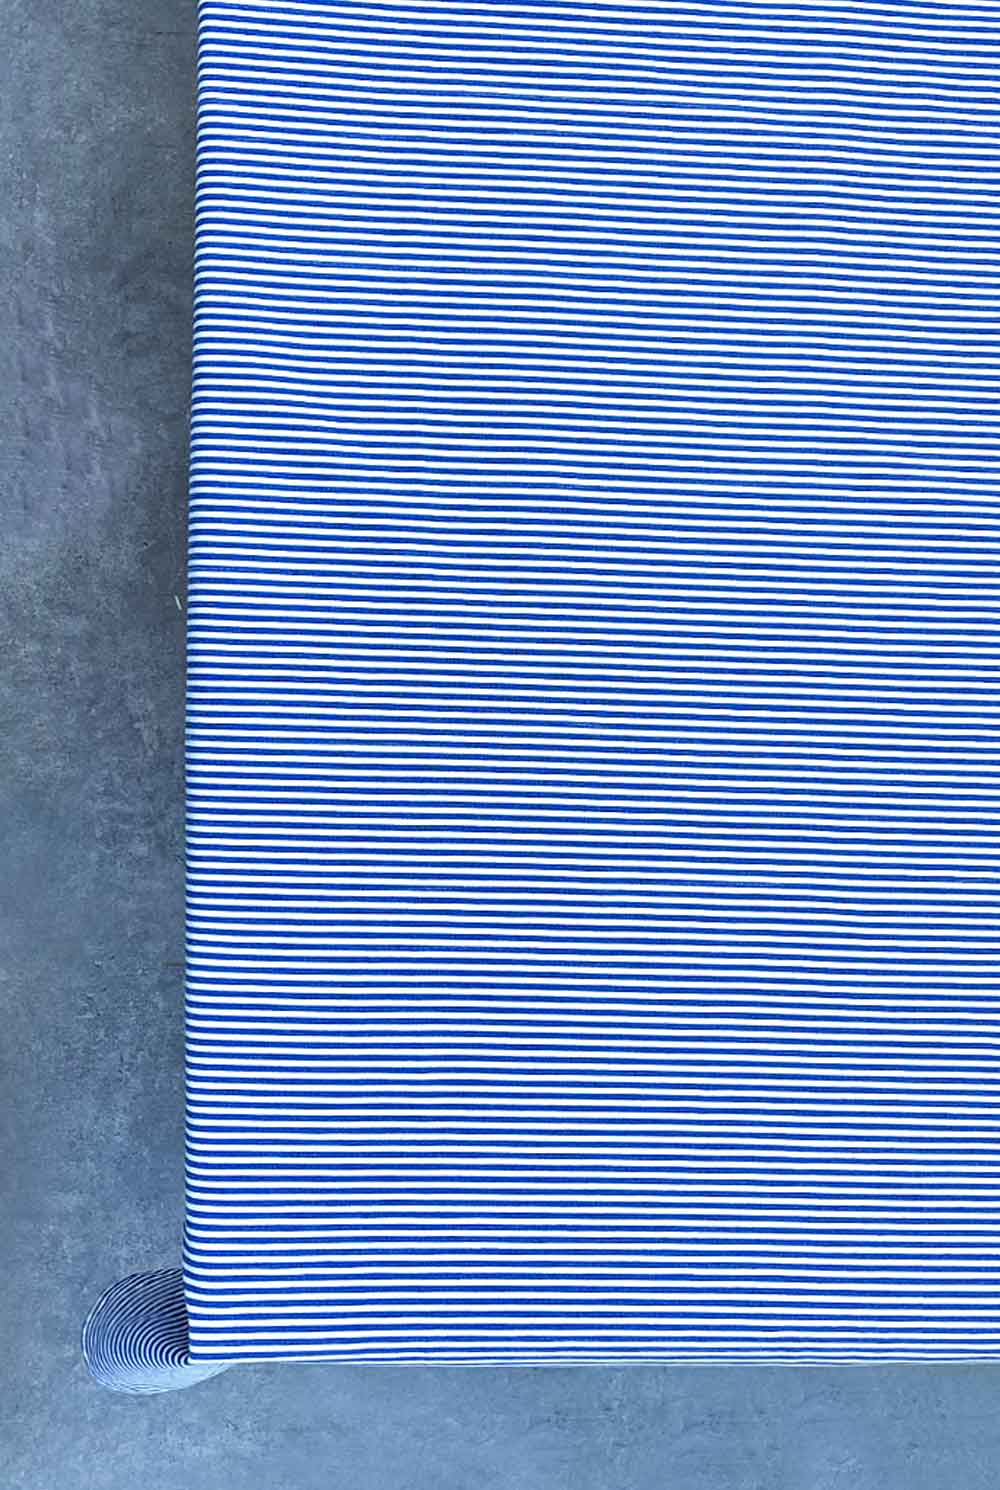 מפת שולחן פסים כחול לבן בבד כותנה דגם נינה - נותר רק ראנר במלאי